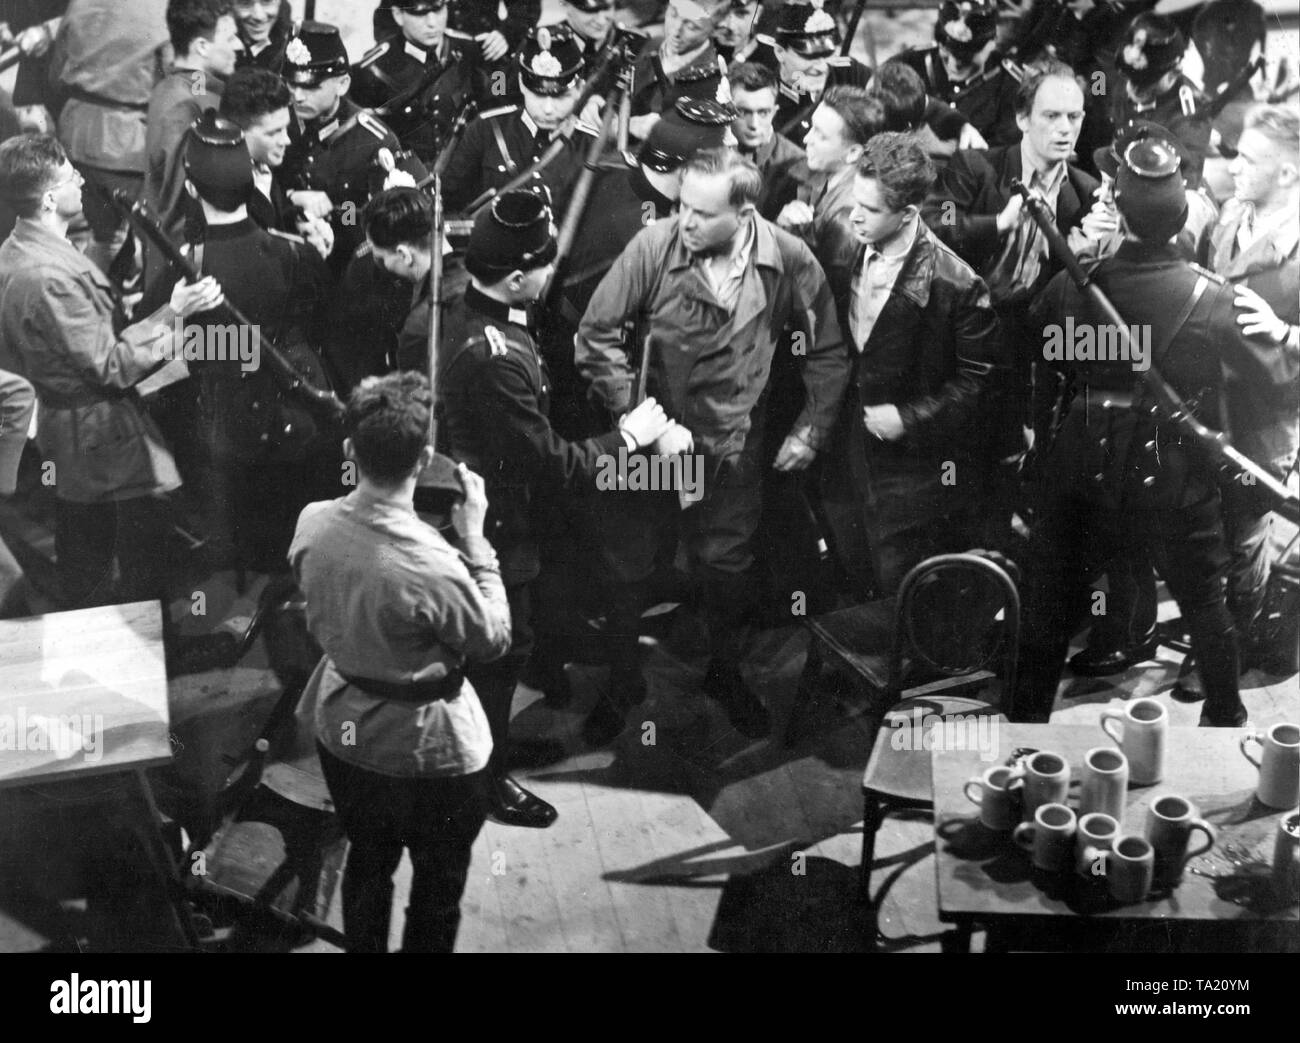 Risse tra nazisti e comunisti erano comuni, specialmente negli anni della Grande Depressione, quando molti disoccupati uniti i partiti estremisti. Probabilmente un film scena da "Horst Wessel', 1933. Foto Stock